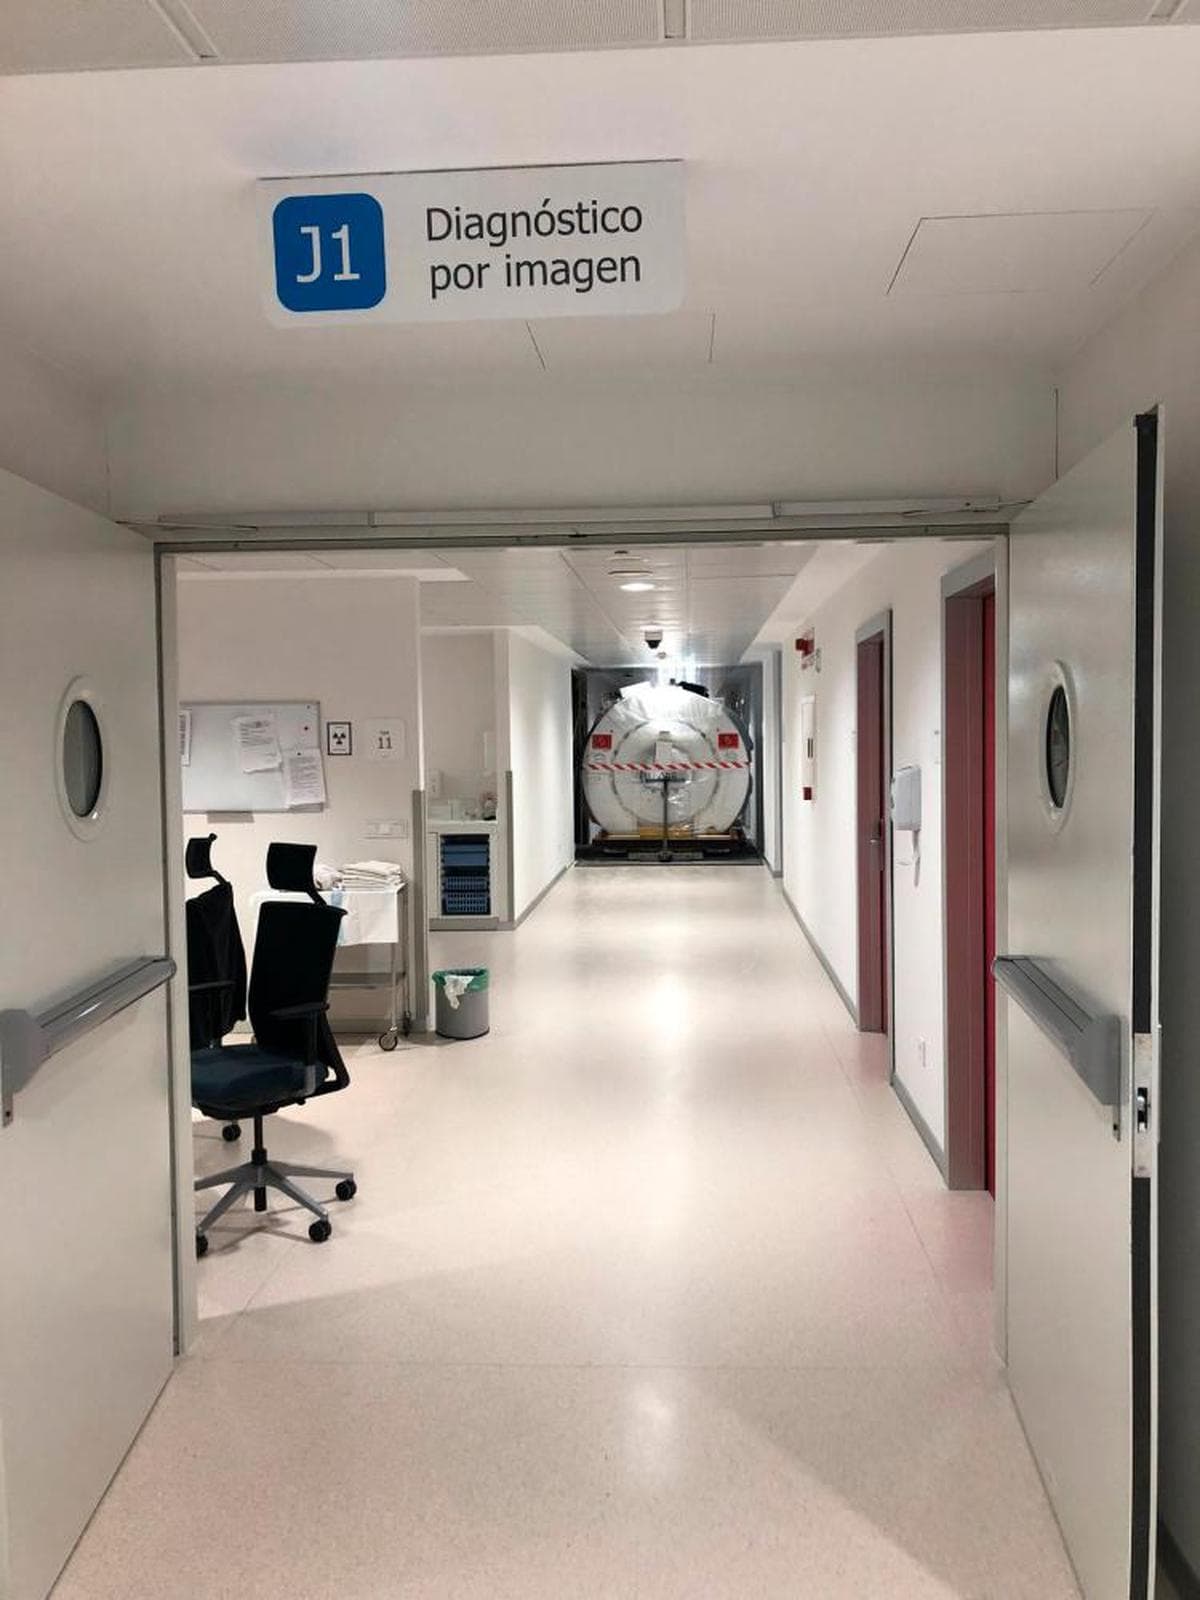 Imagen de la resonancia magnética, avanzando por los pasillos del Hospital.